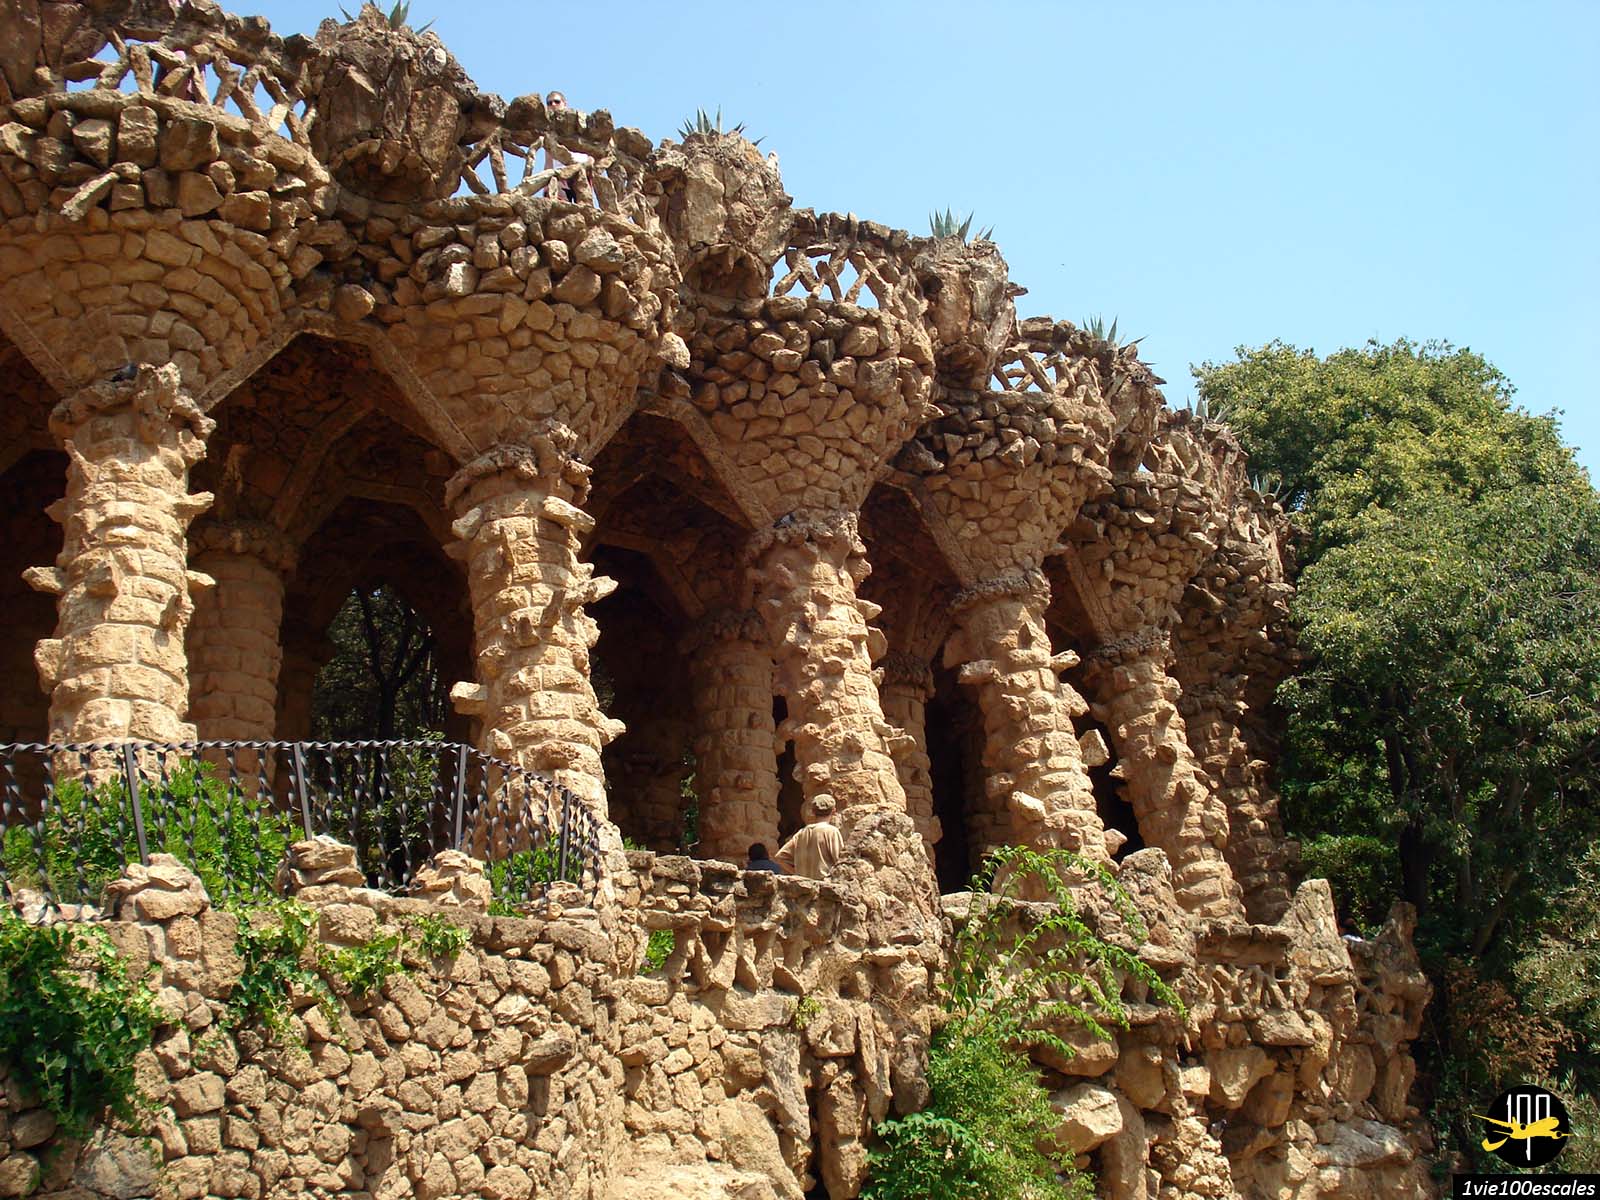 Le viaducs le Pont de Baix soutenu par des colonnes et des voûtes faites de pierres